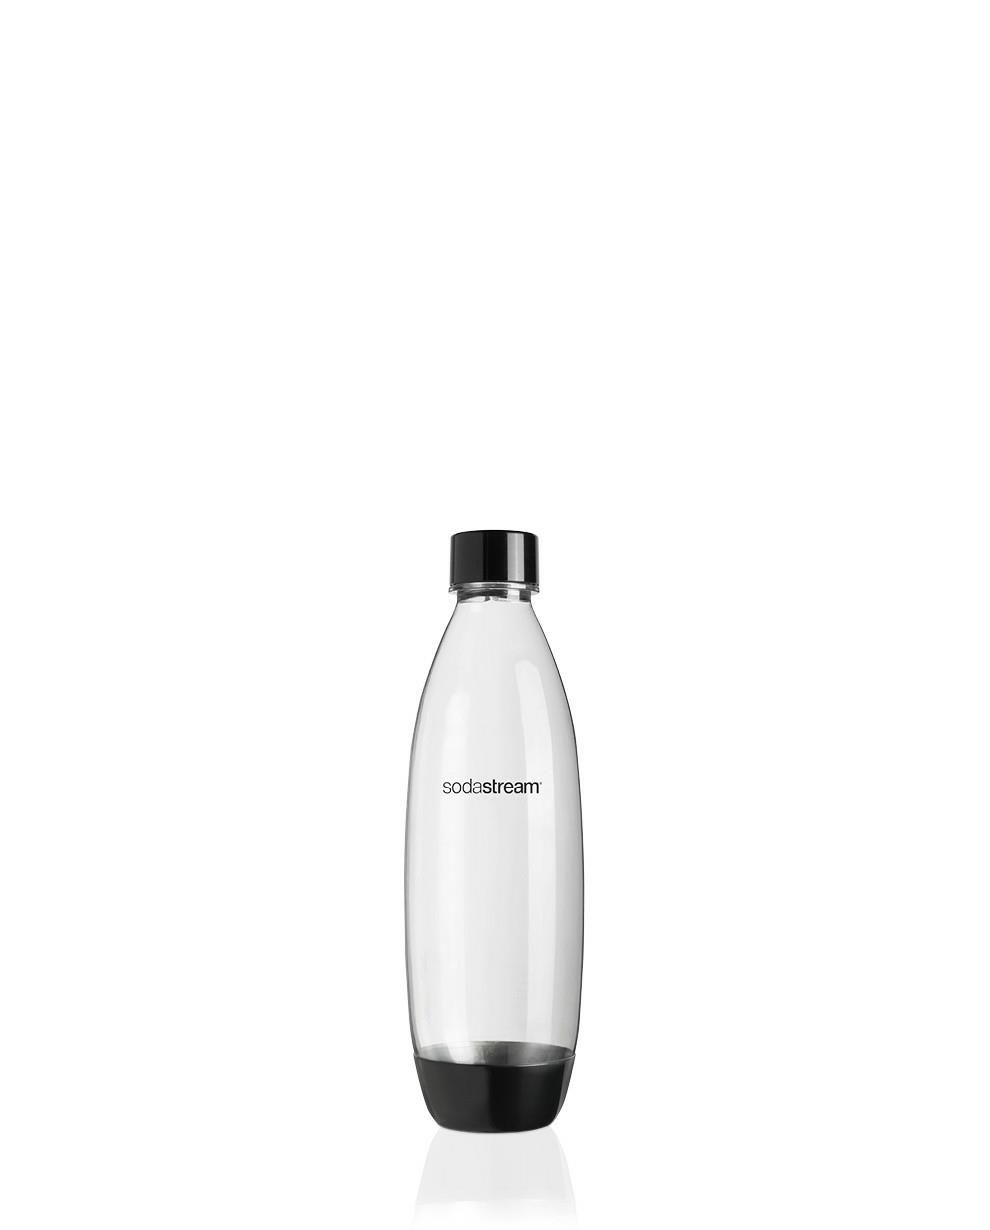 SodaStream: Ricarica Gas CO2 + Bottiglia PET 1L + Concentrato Pepsi Max